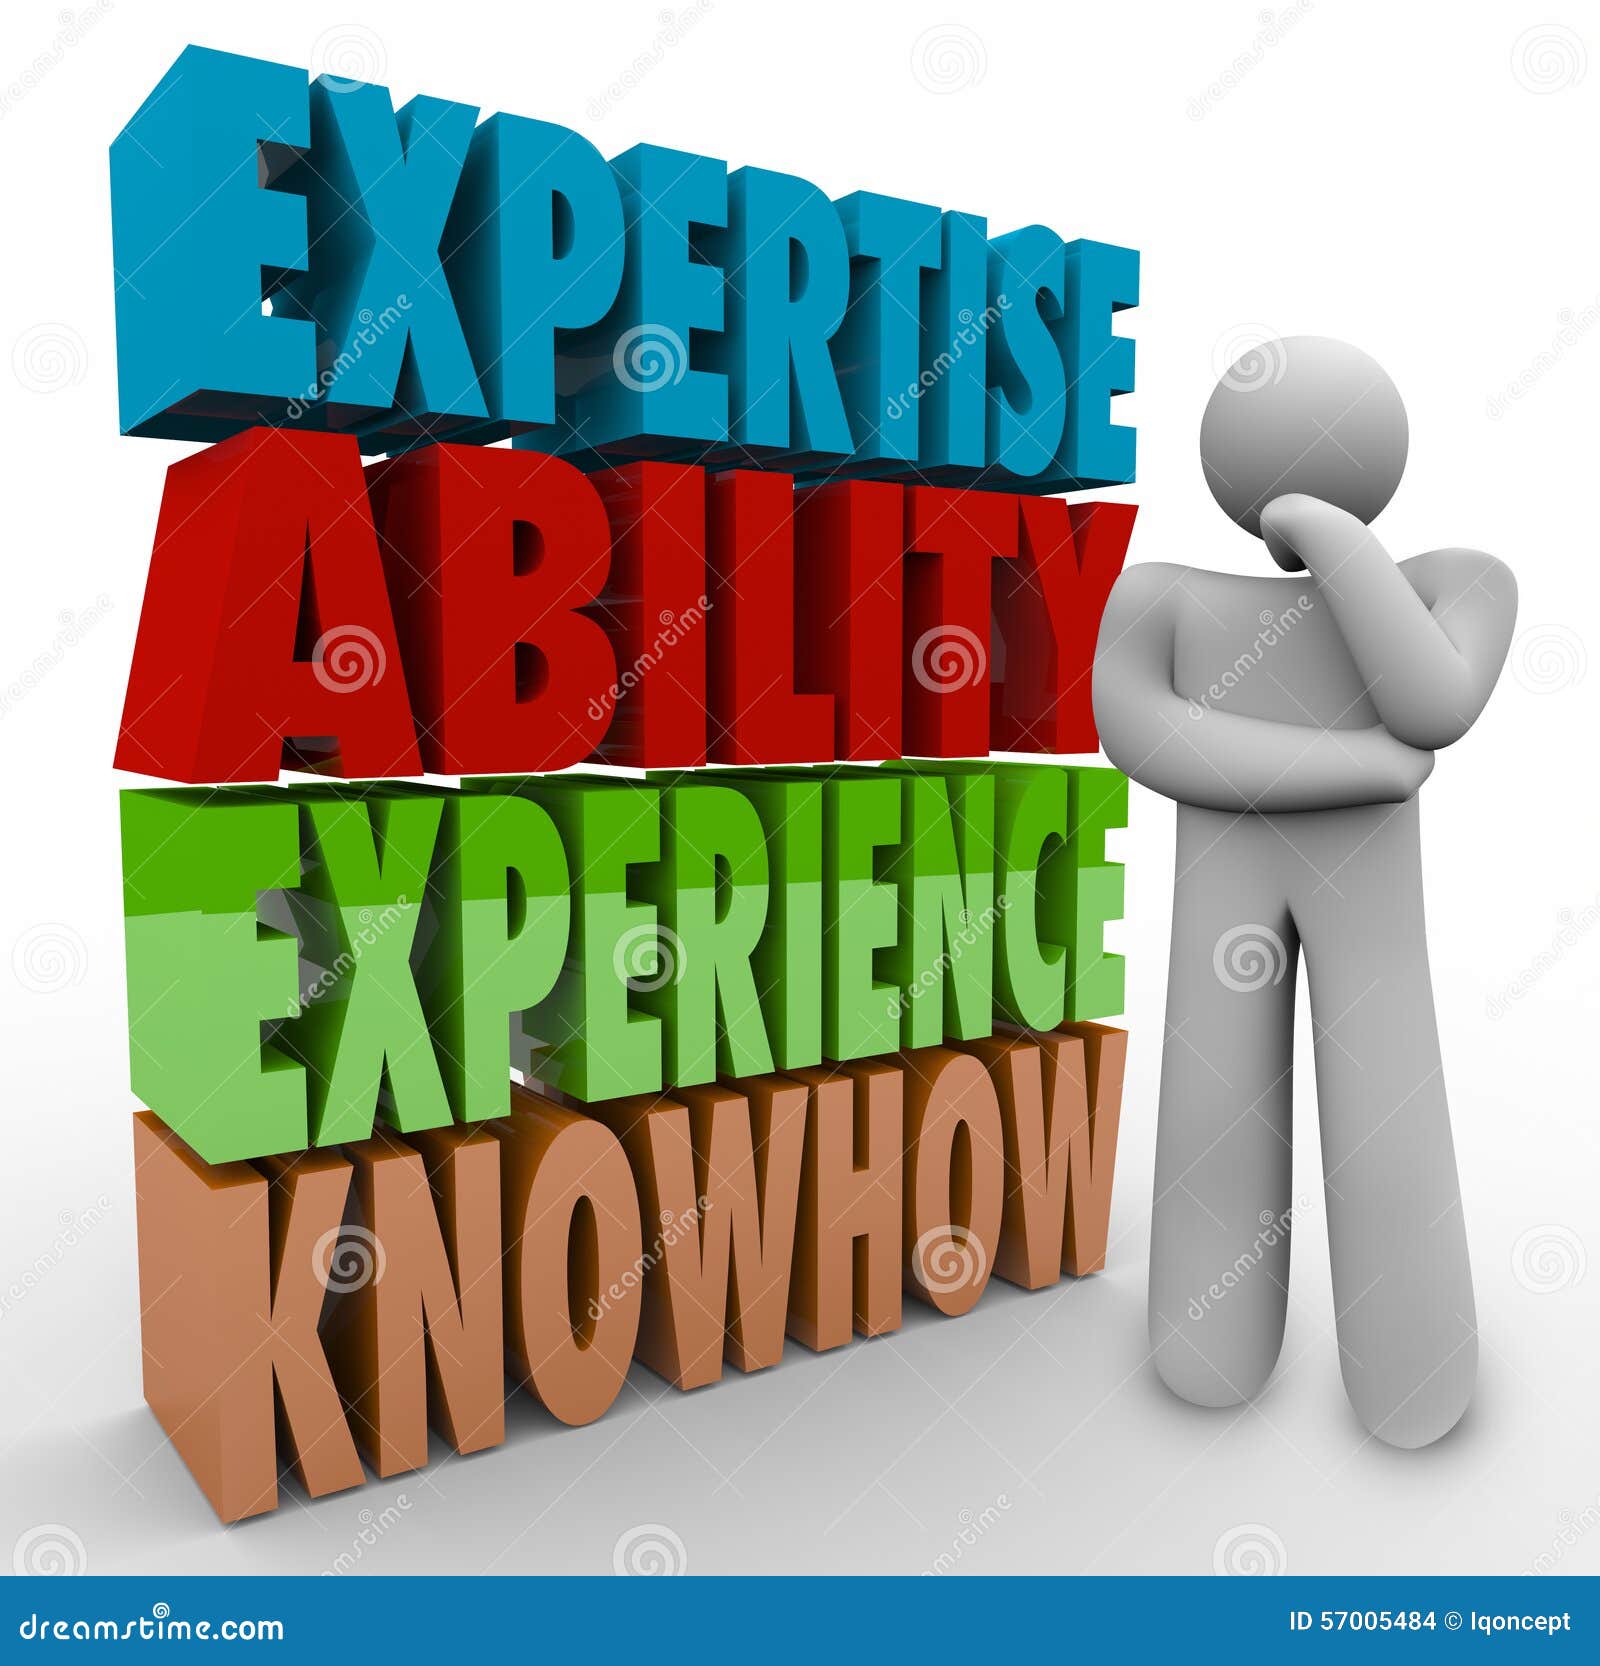 Qualificações de Job Criteria do pensador do "knowhow" da experiência da capacidade da experiência. Experiência da capacidade da experiência e palavras e pensador do "knowhow" que querem saber sobre critérios do trabalho ou da carreira, exigências ou qualificações